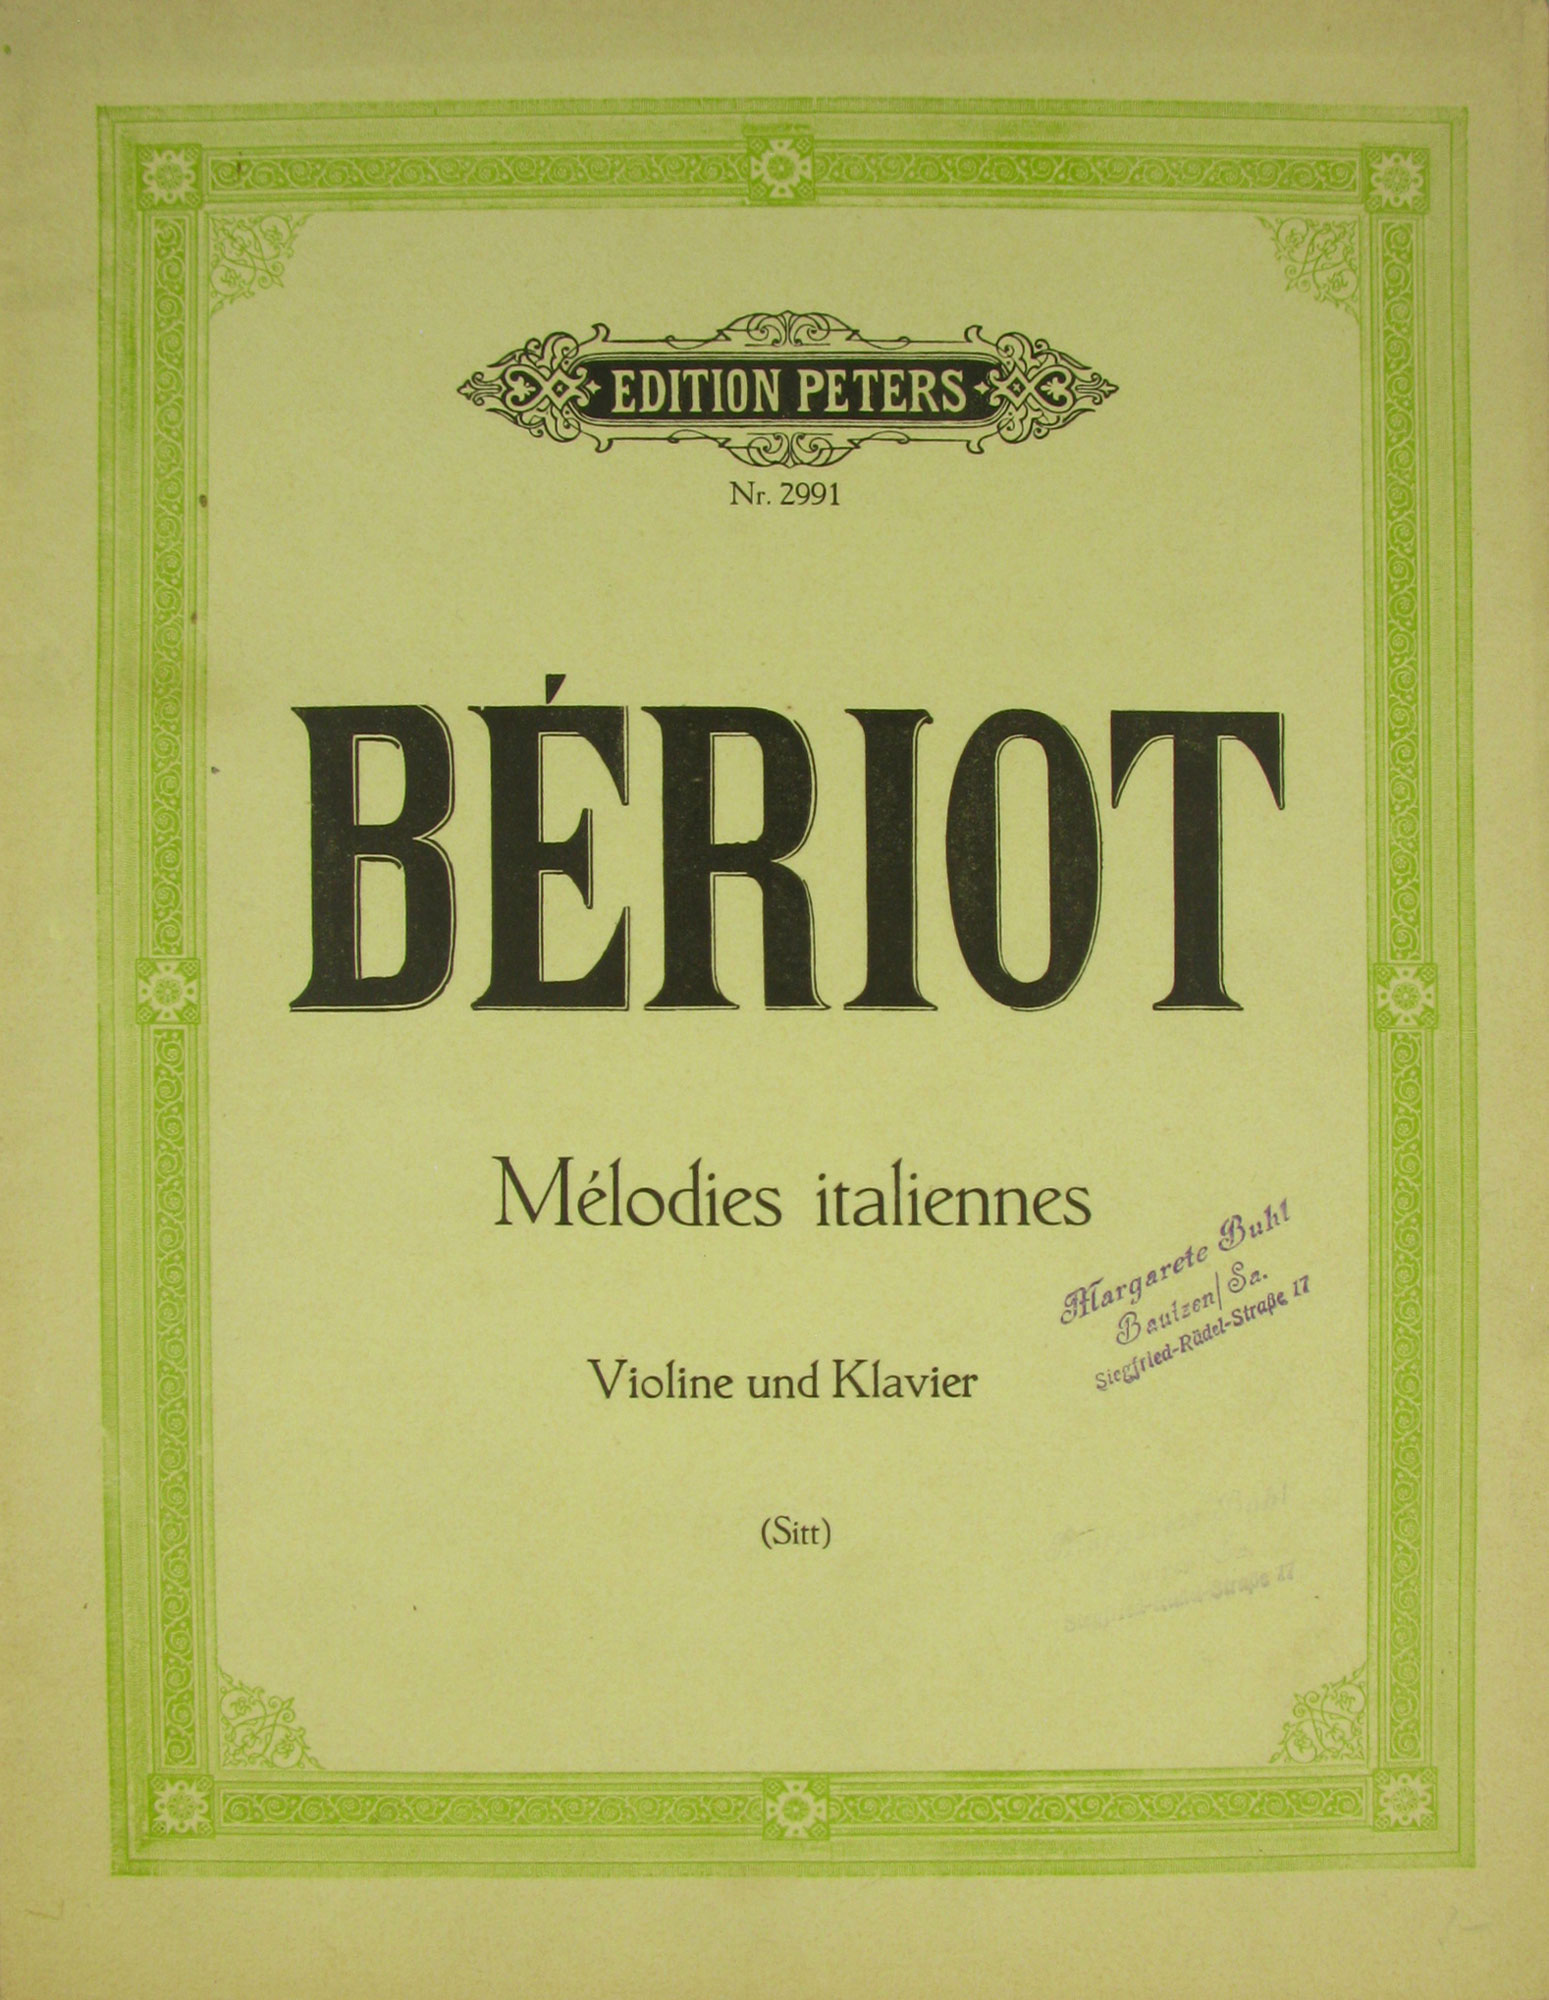   Ch. de Beriot. Melodies italiennes. Violine und Klavier (Sitt). 